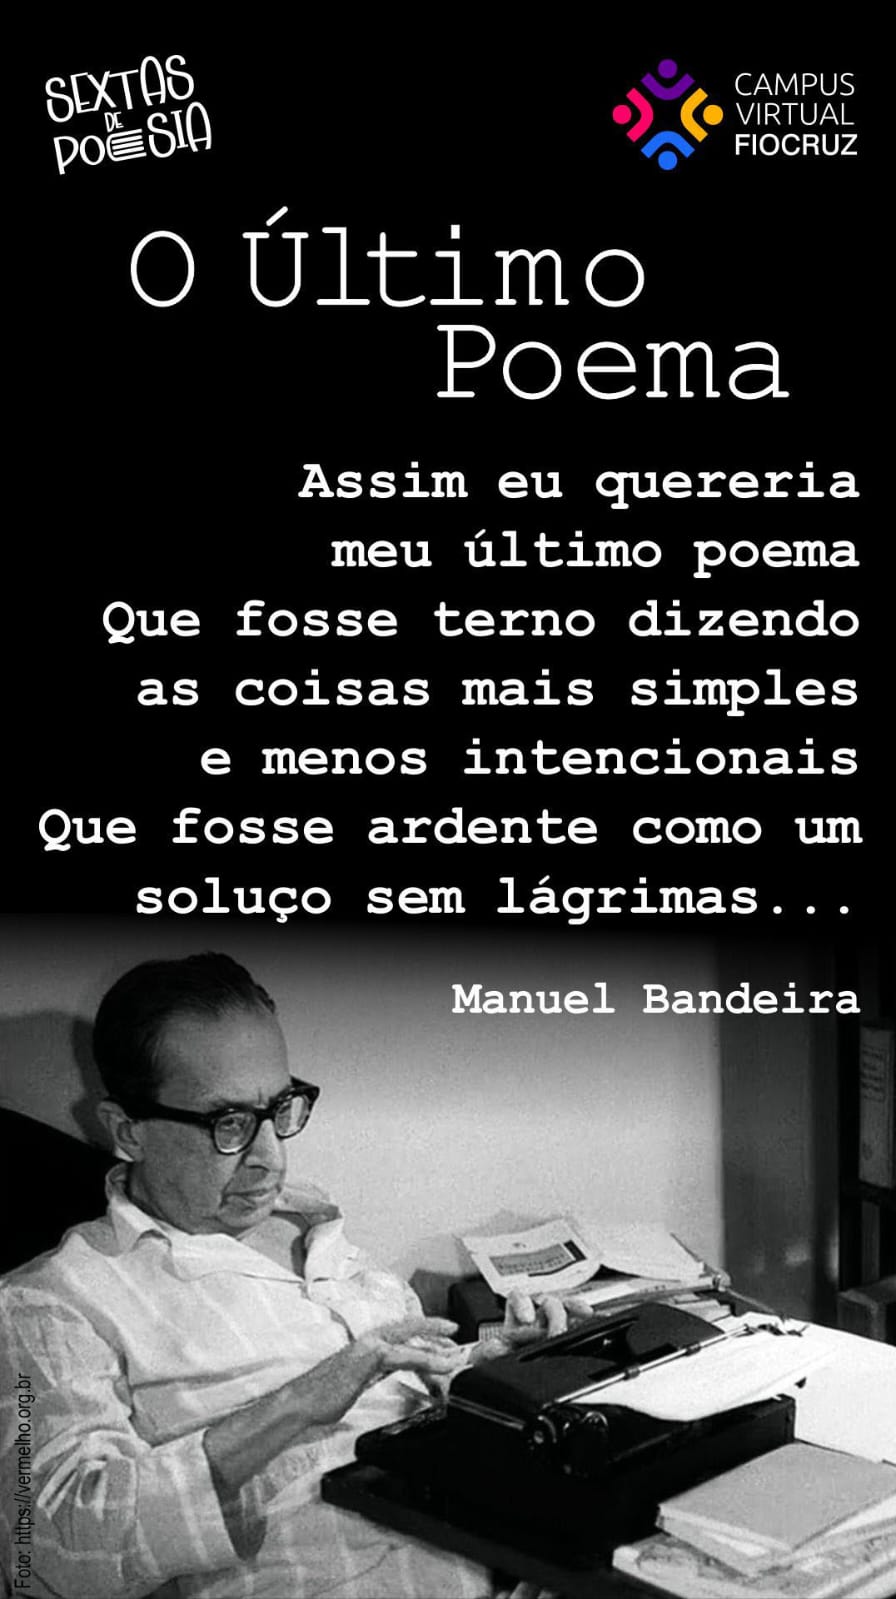 Sextas de Poesia traz Manuel Bandeira com O Último Poema